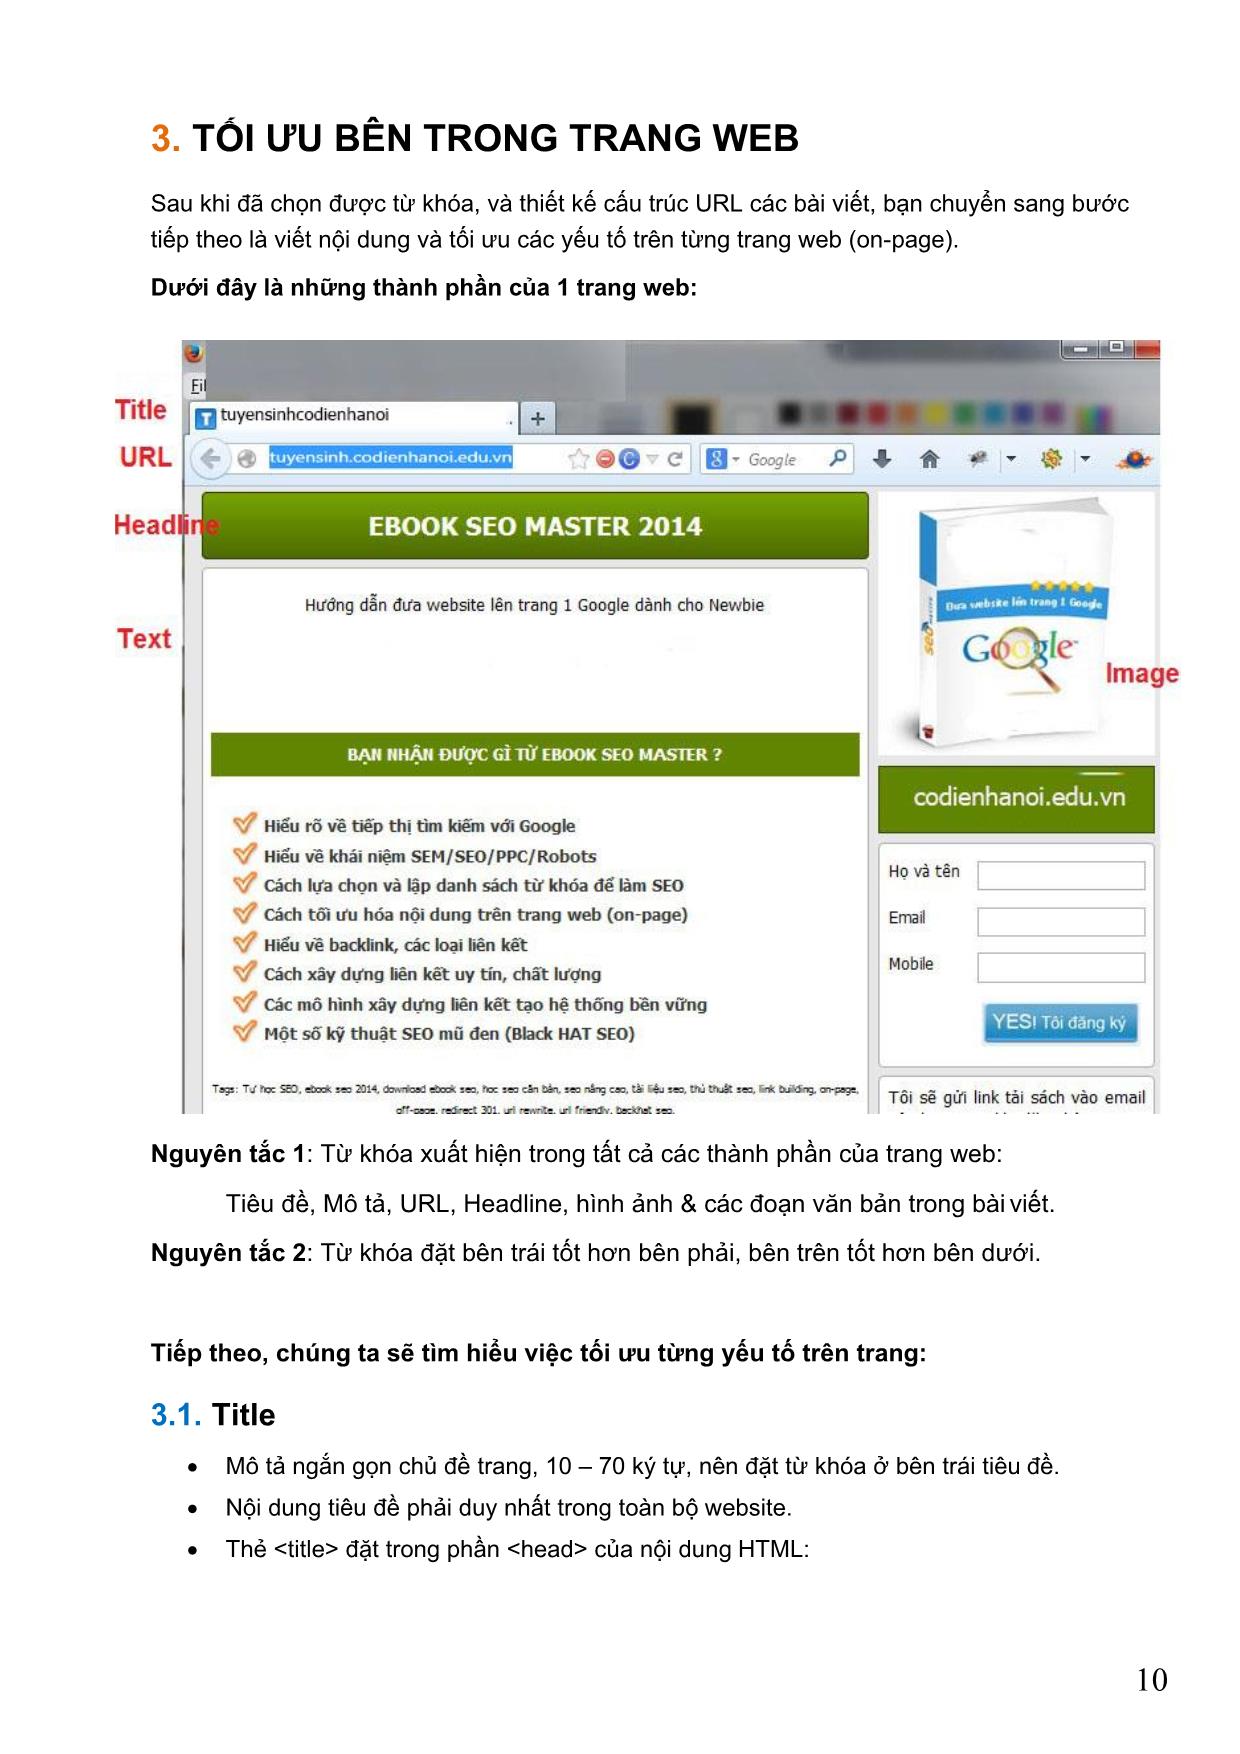 Giáo trình Tối ưu hóa máy tìm kiếm cho web (SEO) trang 10